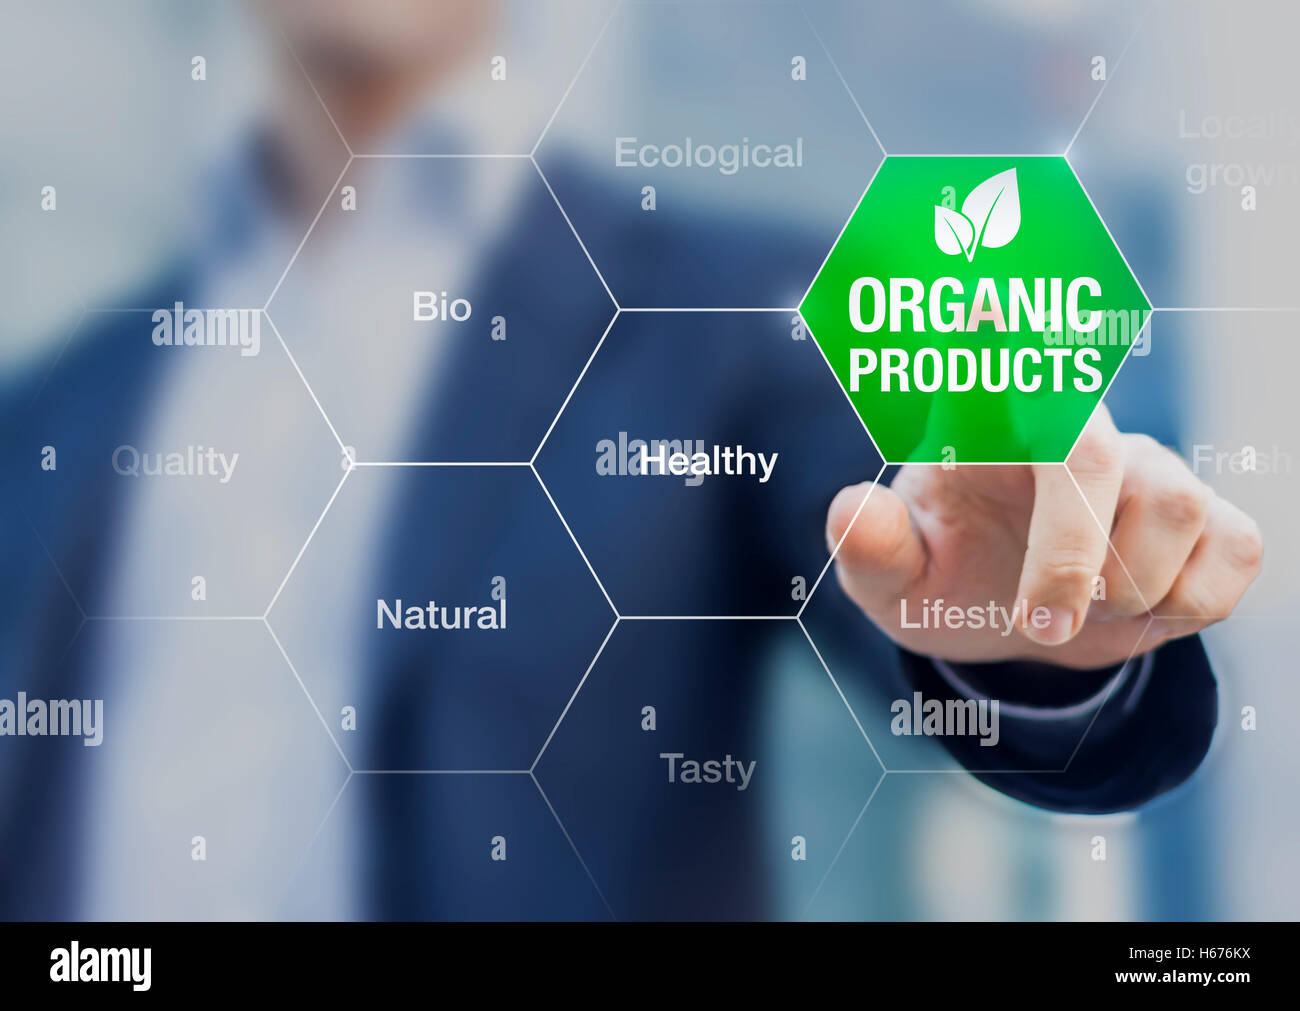 Produits bio concept, businessman touching bouton vert sur l'interface avec des mots au sujet d'une alimentation saine Une alimentation naturelle Banque D'Images